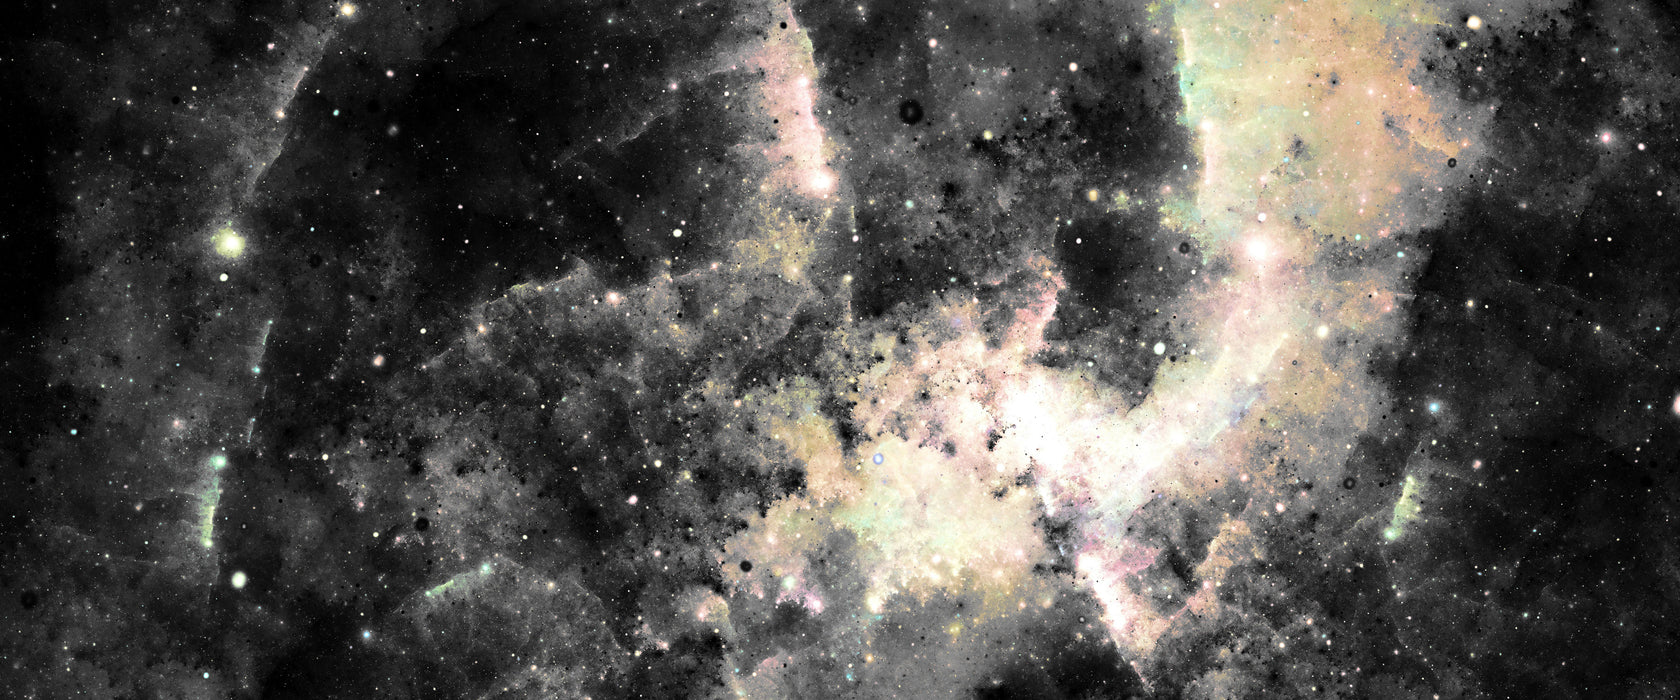 Bunte Nebelgalaxie und Sterne, Glasbild Panorama